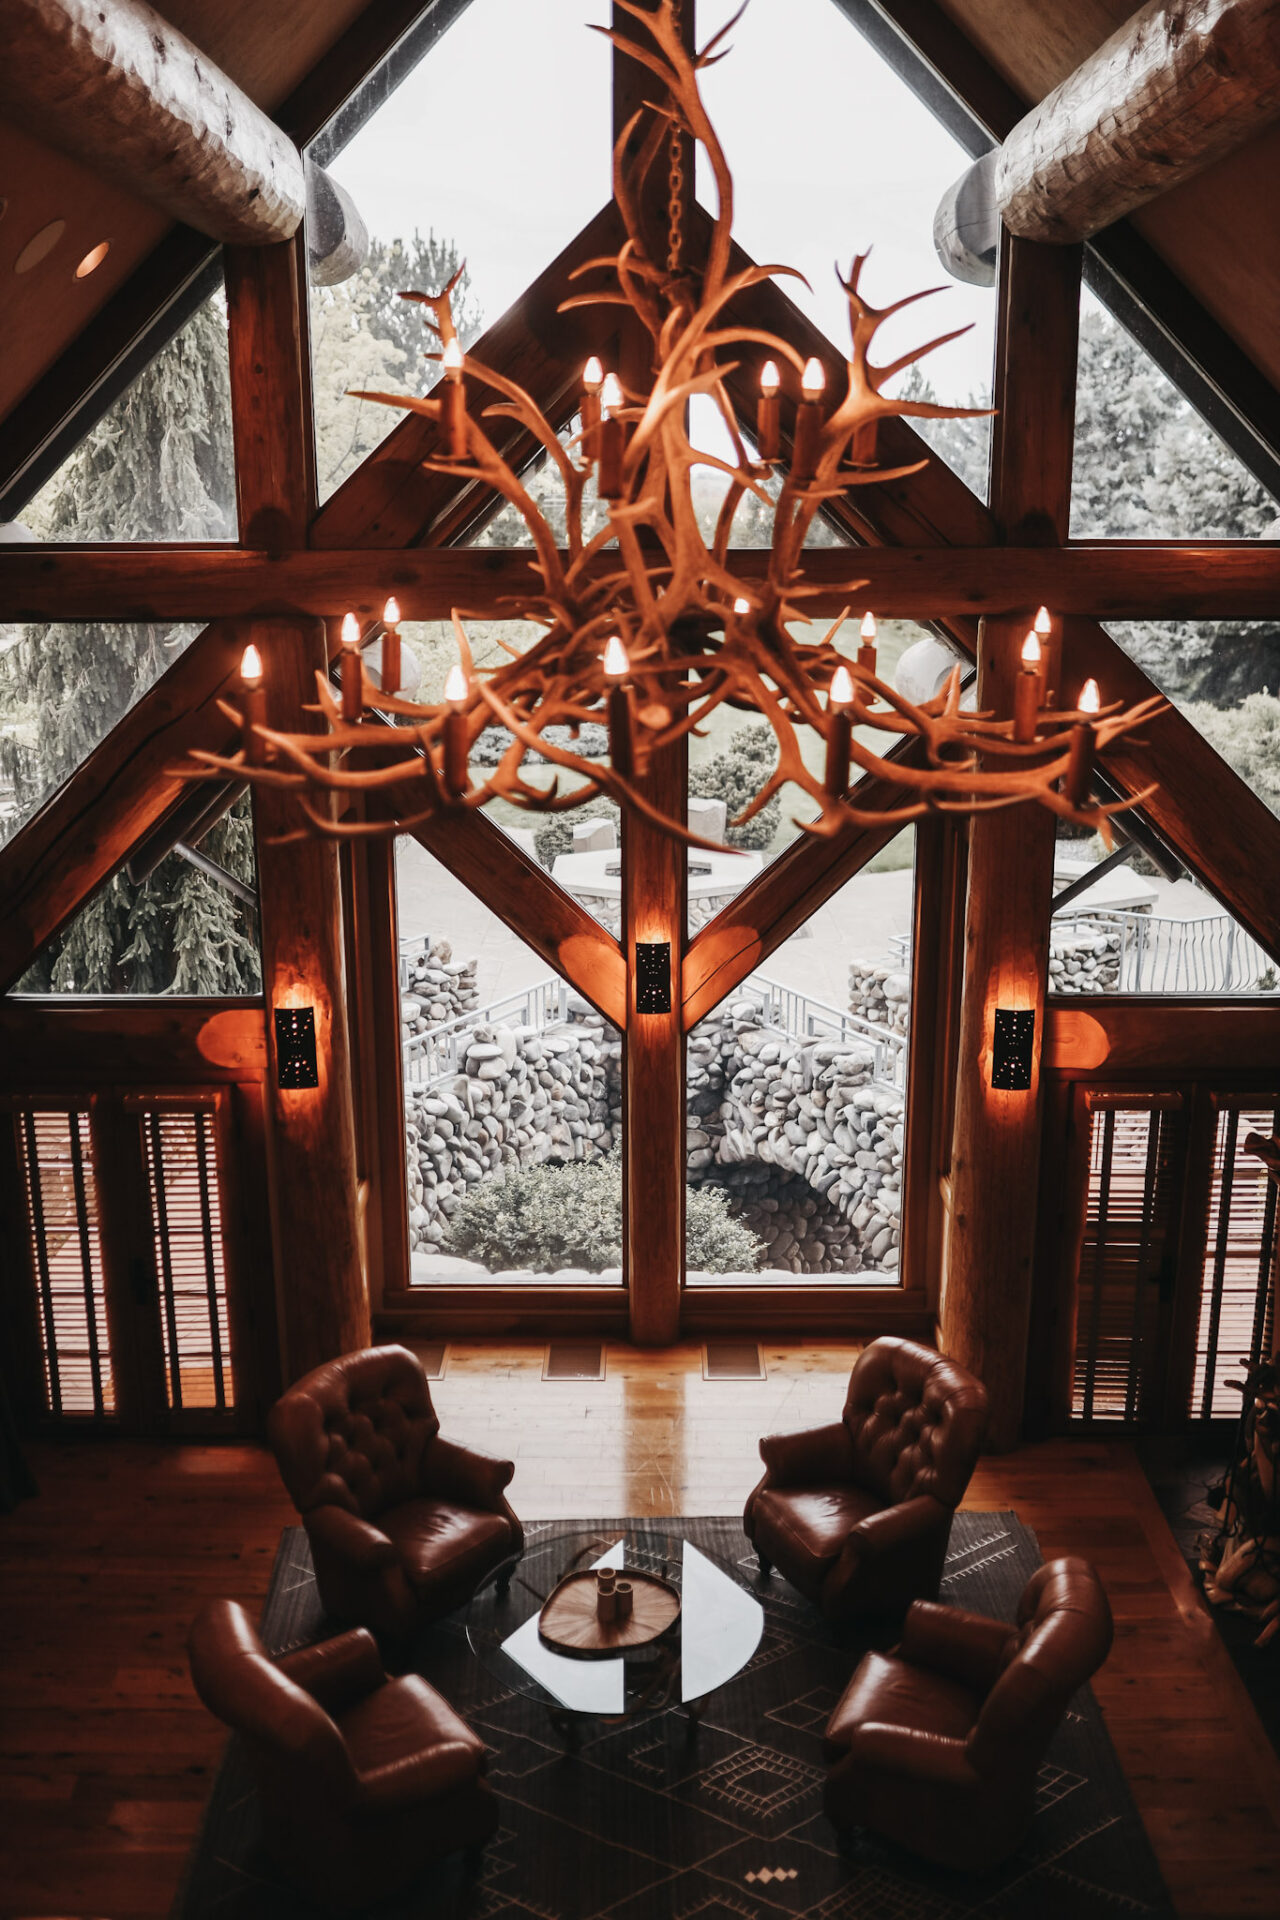 Yellowhawk reception area with deer horn chandelier